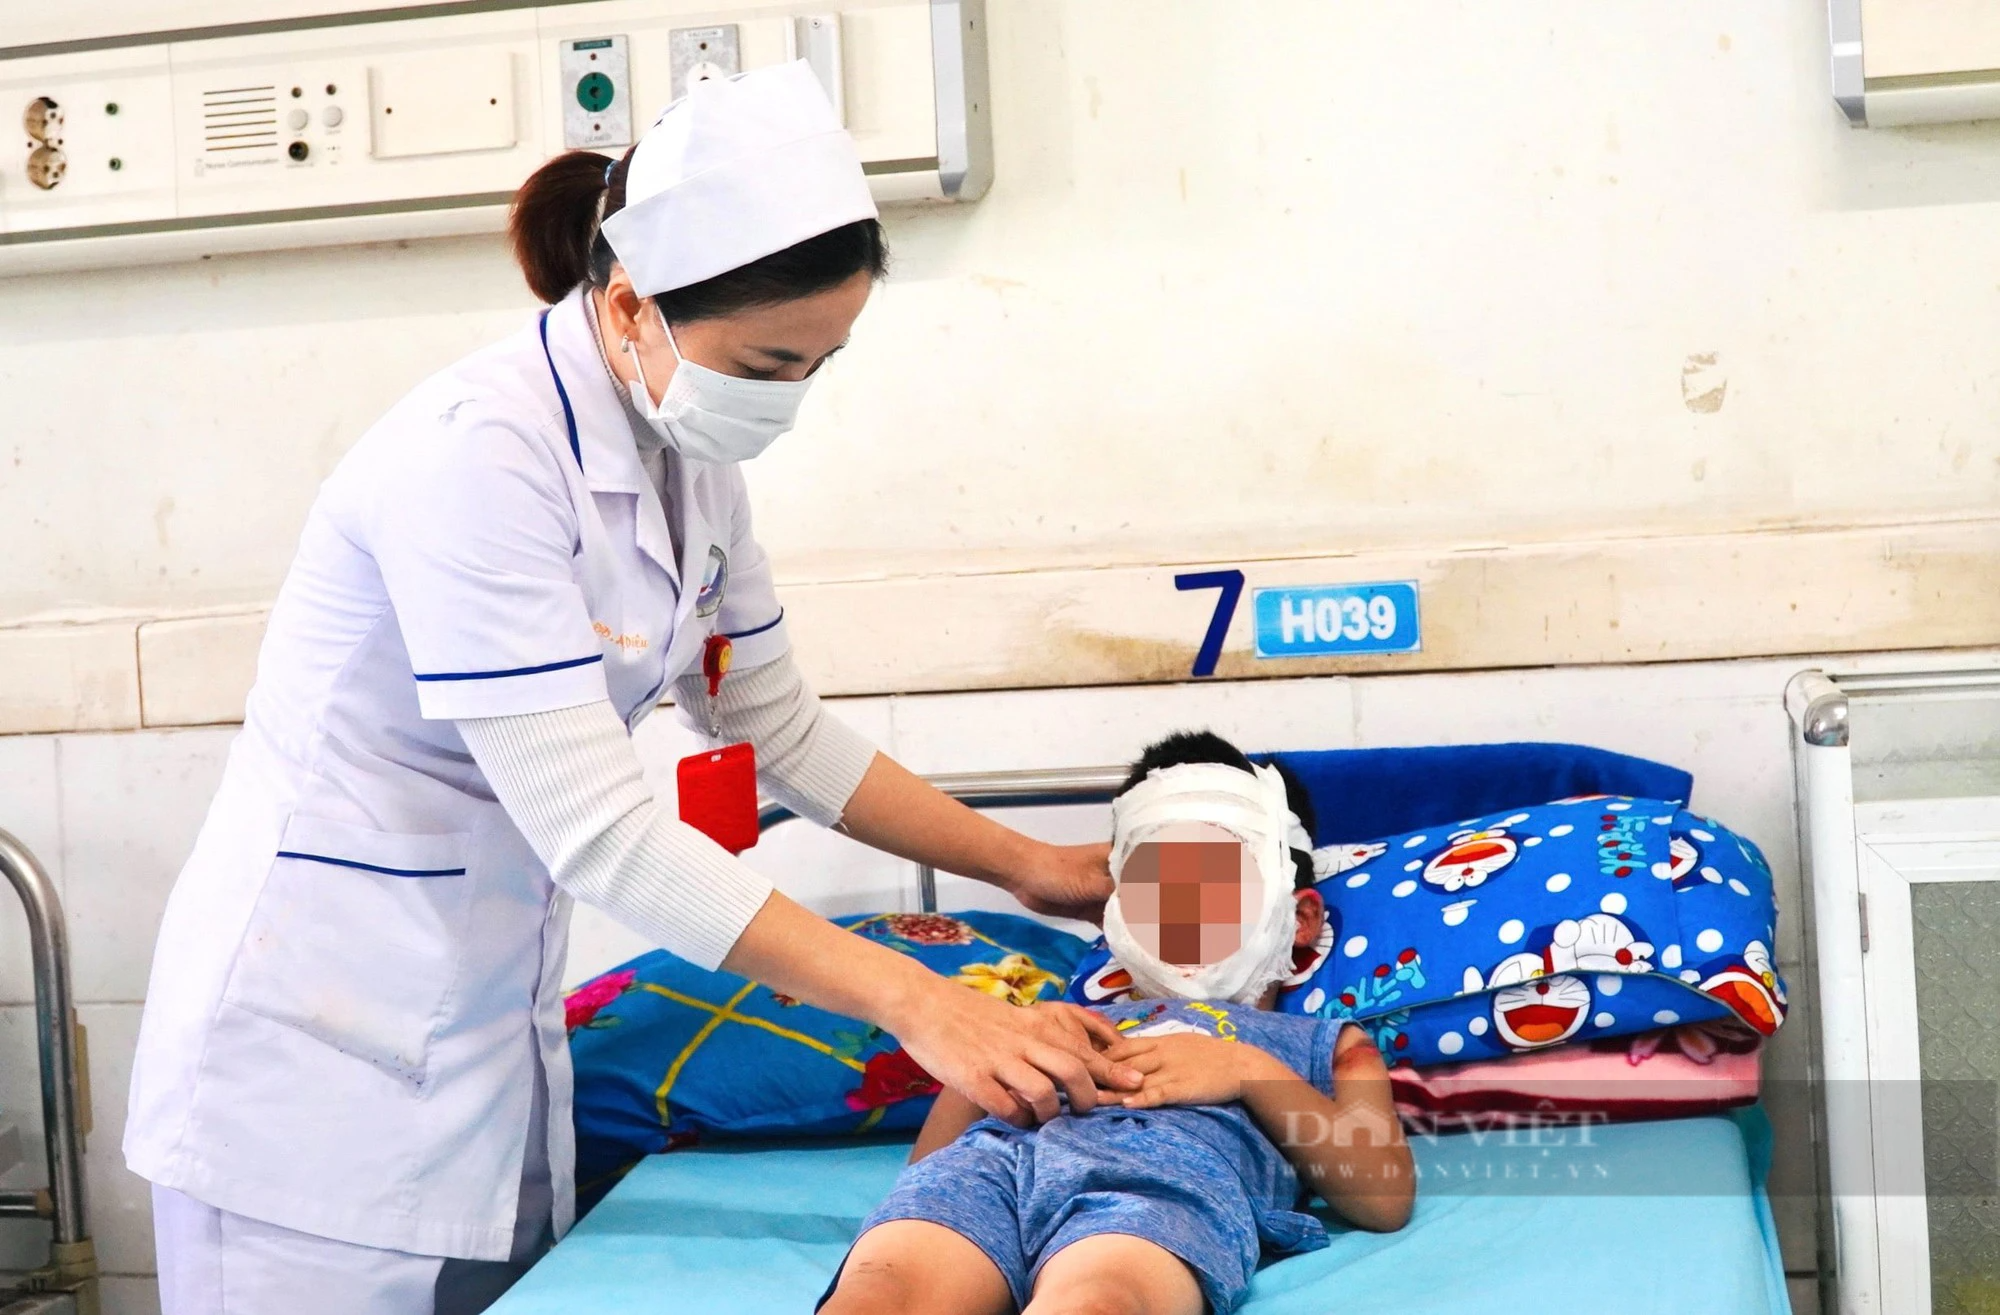 Bóng bay phát nổ, bé trai 4 tuổi ở Quảng Nam bỏng hết khuôn mặt - Ảnh 2.